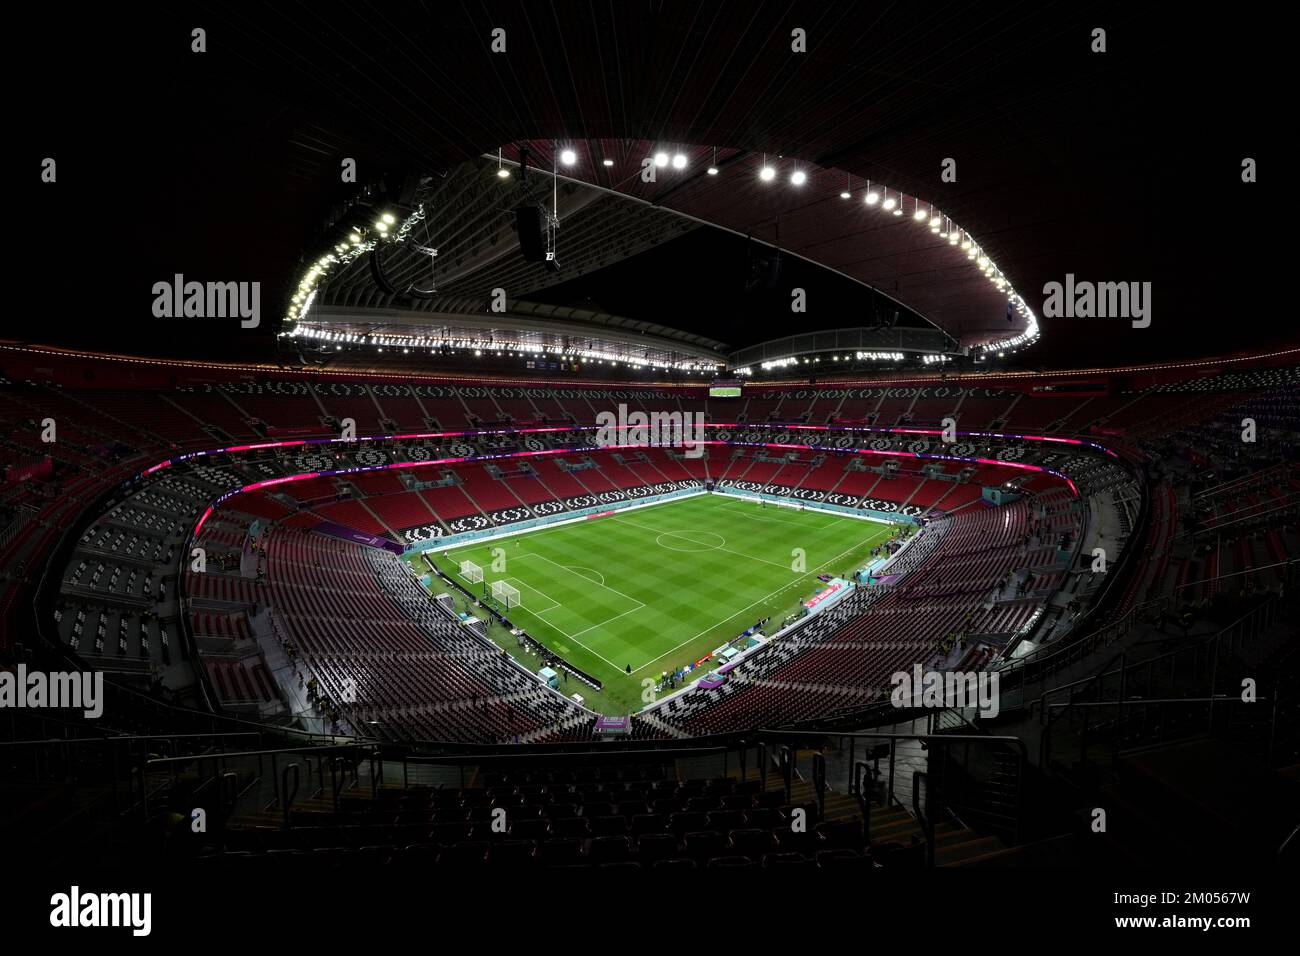 Una visione generale dello stadio al-Bayt di al Khor, in Qatar, in vista della Coppa del mondo FIFA Round di sedici partite tra Inghilterra e Senegal. Data immagine: Domenica 4 dicembre 2022. Foto Stock